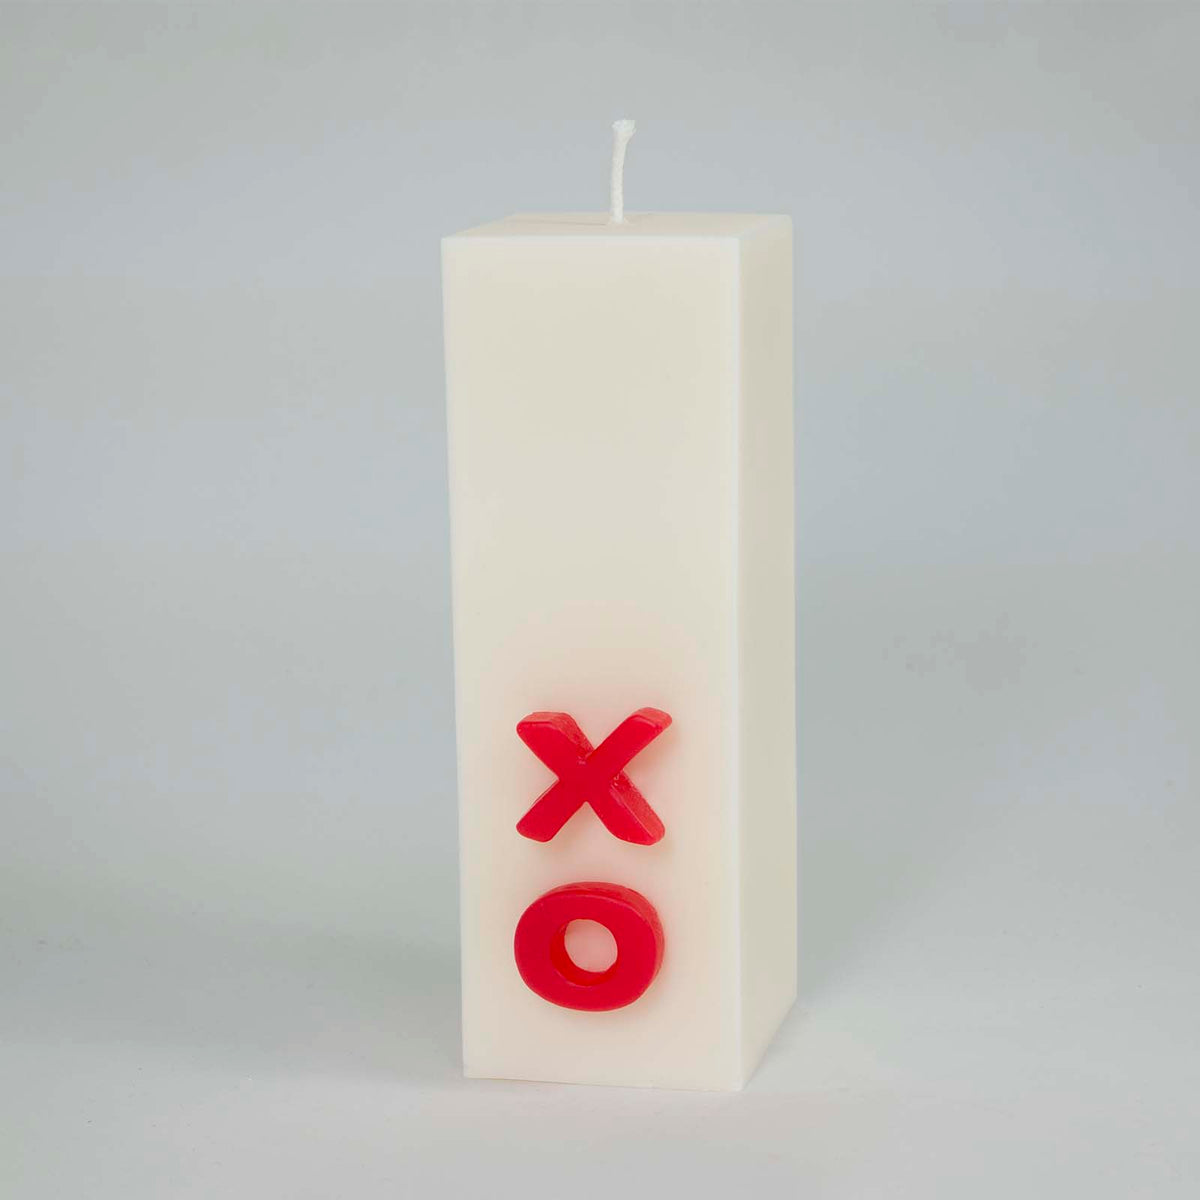 XO Candle